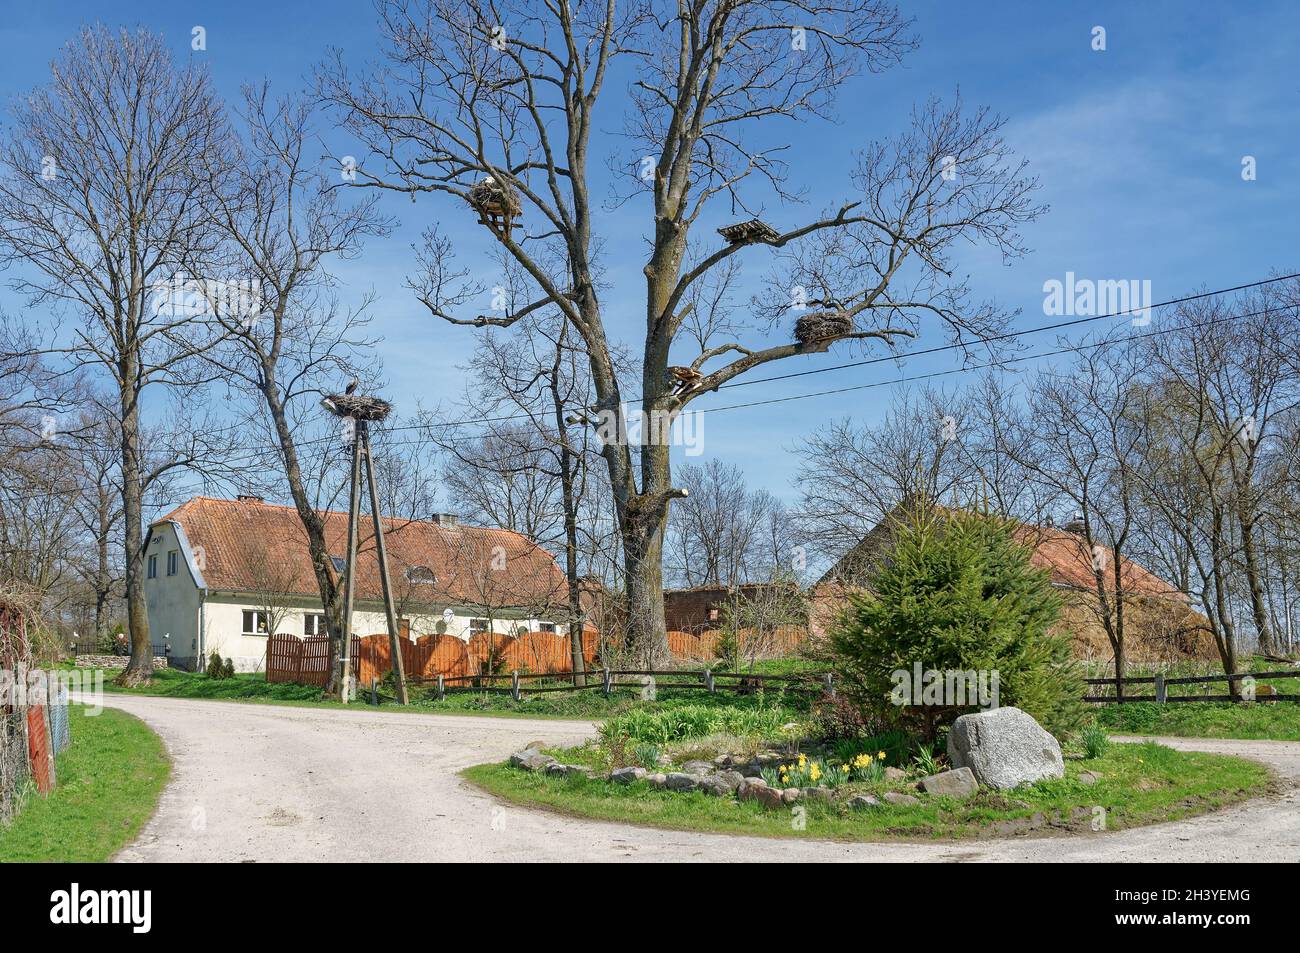 Village of Storks Zywkowo,Warmia-Masuria,Poland Stock Photo